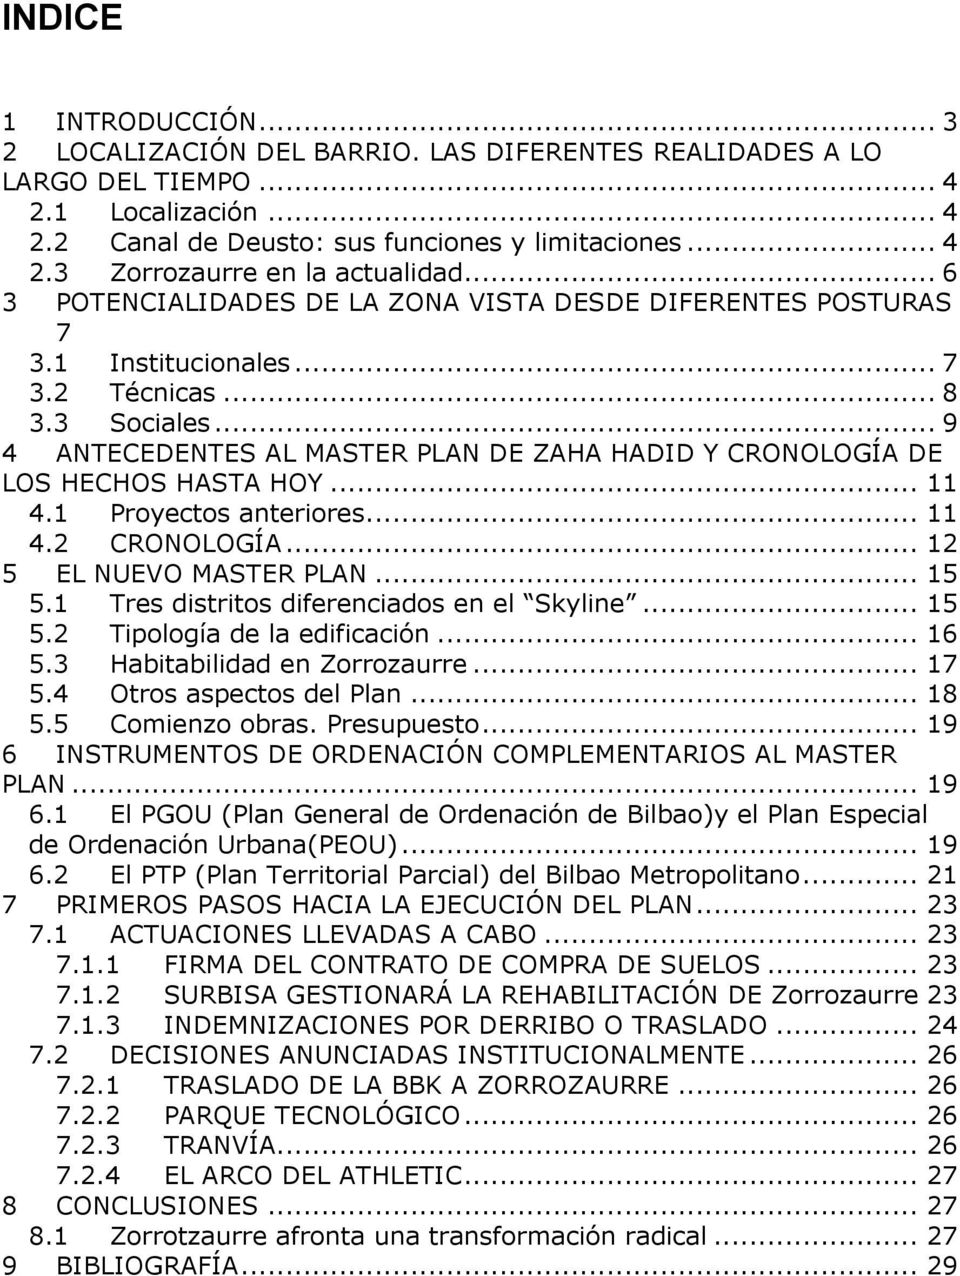 .. 9 4 ANTECEDENTES AL MASTER PLAN DE ZAHA HADID Y CRONOLOGÍA DE LOS HECHOS HASTA HOY... 11 4.1 Proyectos anteriores... 11 4.2 CRONOLOGÍA... 12 5 EL NUEVO MASTER PLAN... 15 5.